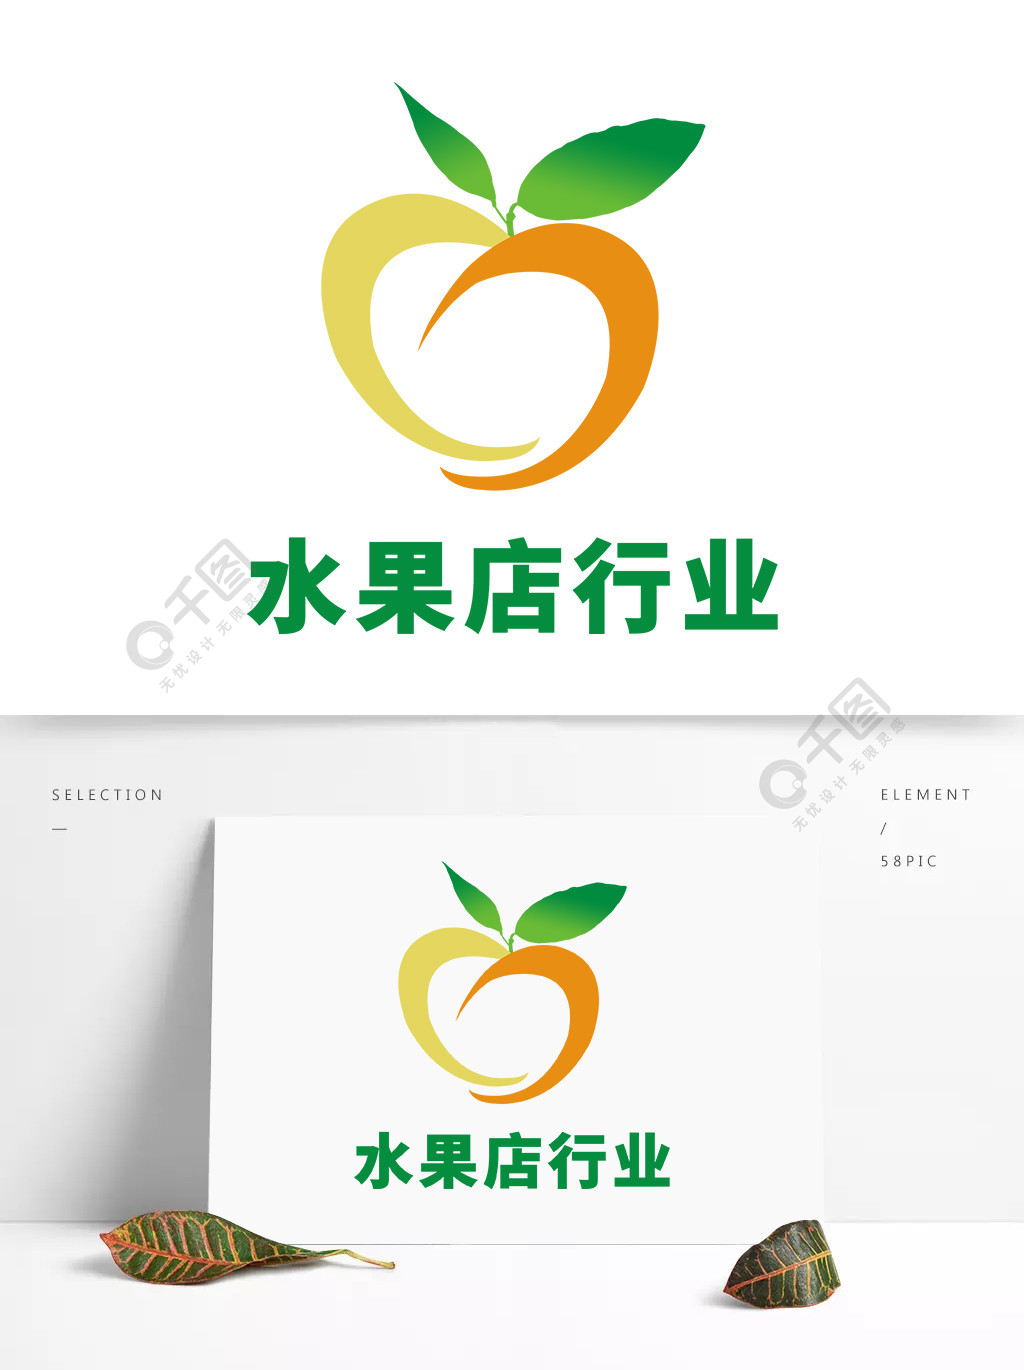 水果店logo图片2年前发布